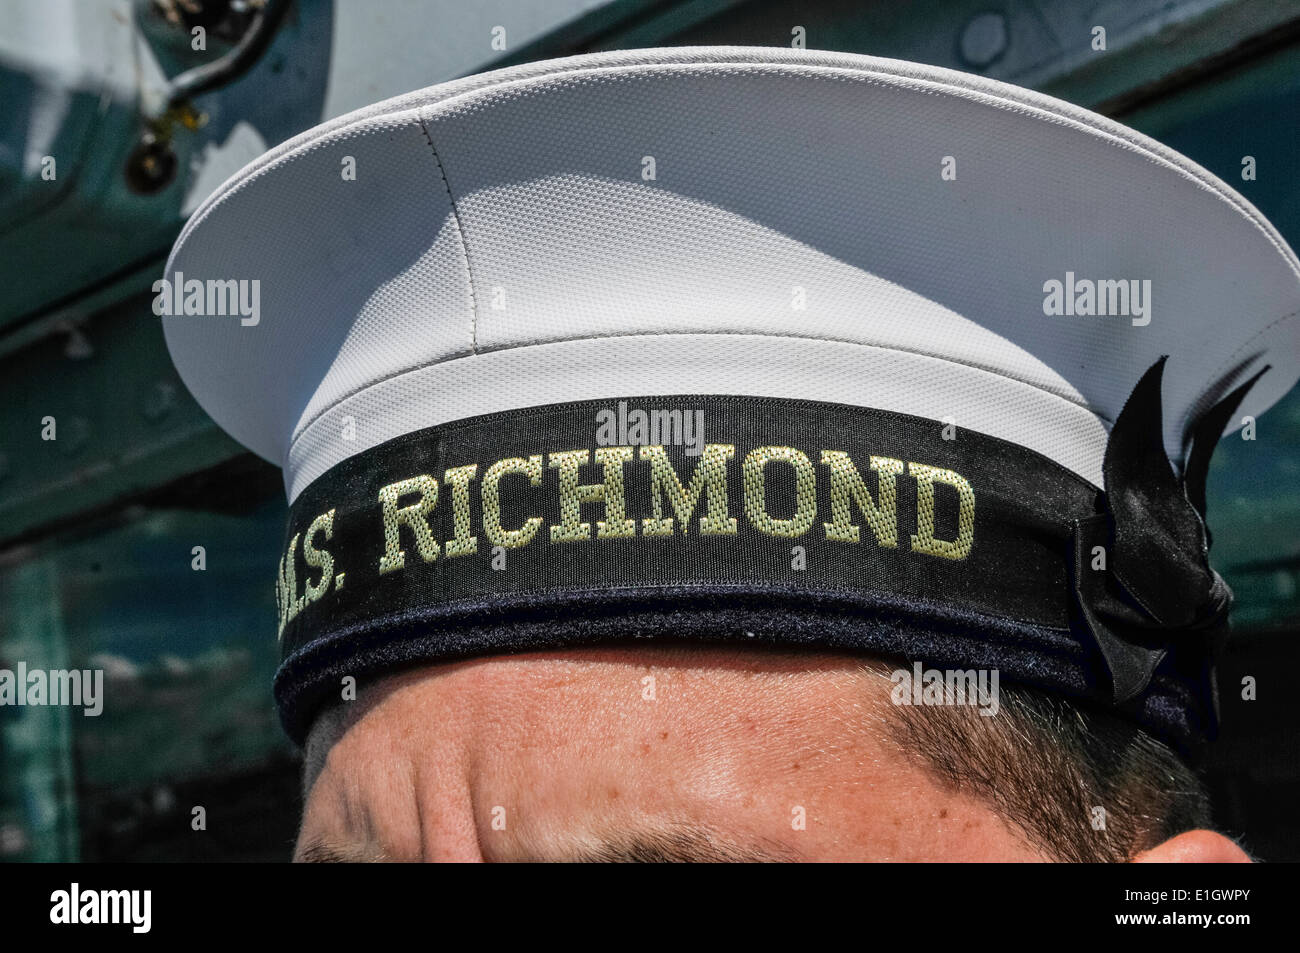 Marin de la Marine royale porte un chapeau avec 'HMS Richmond' Banque D'Images